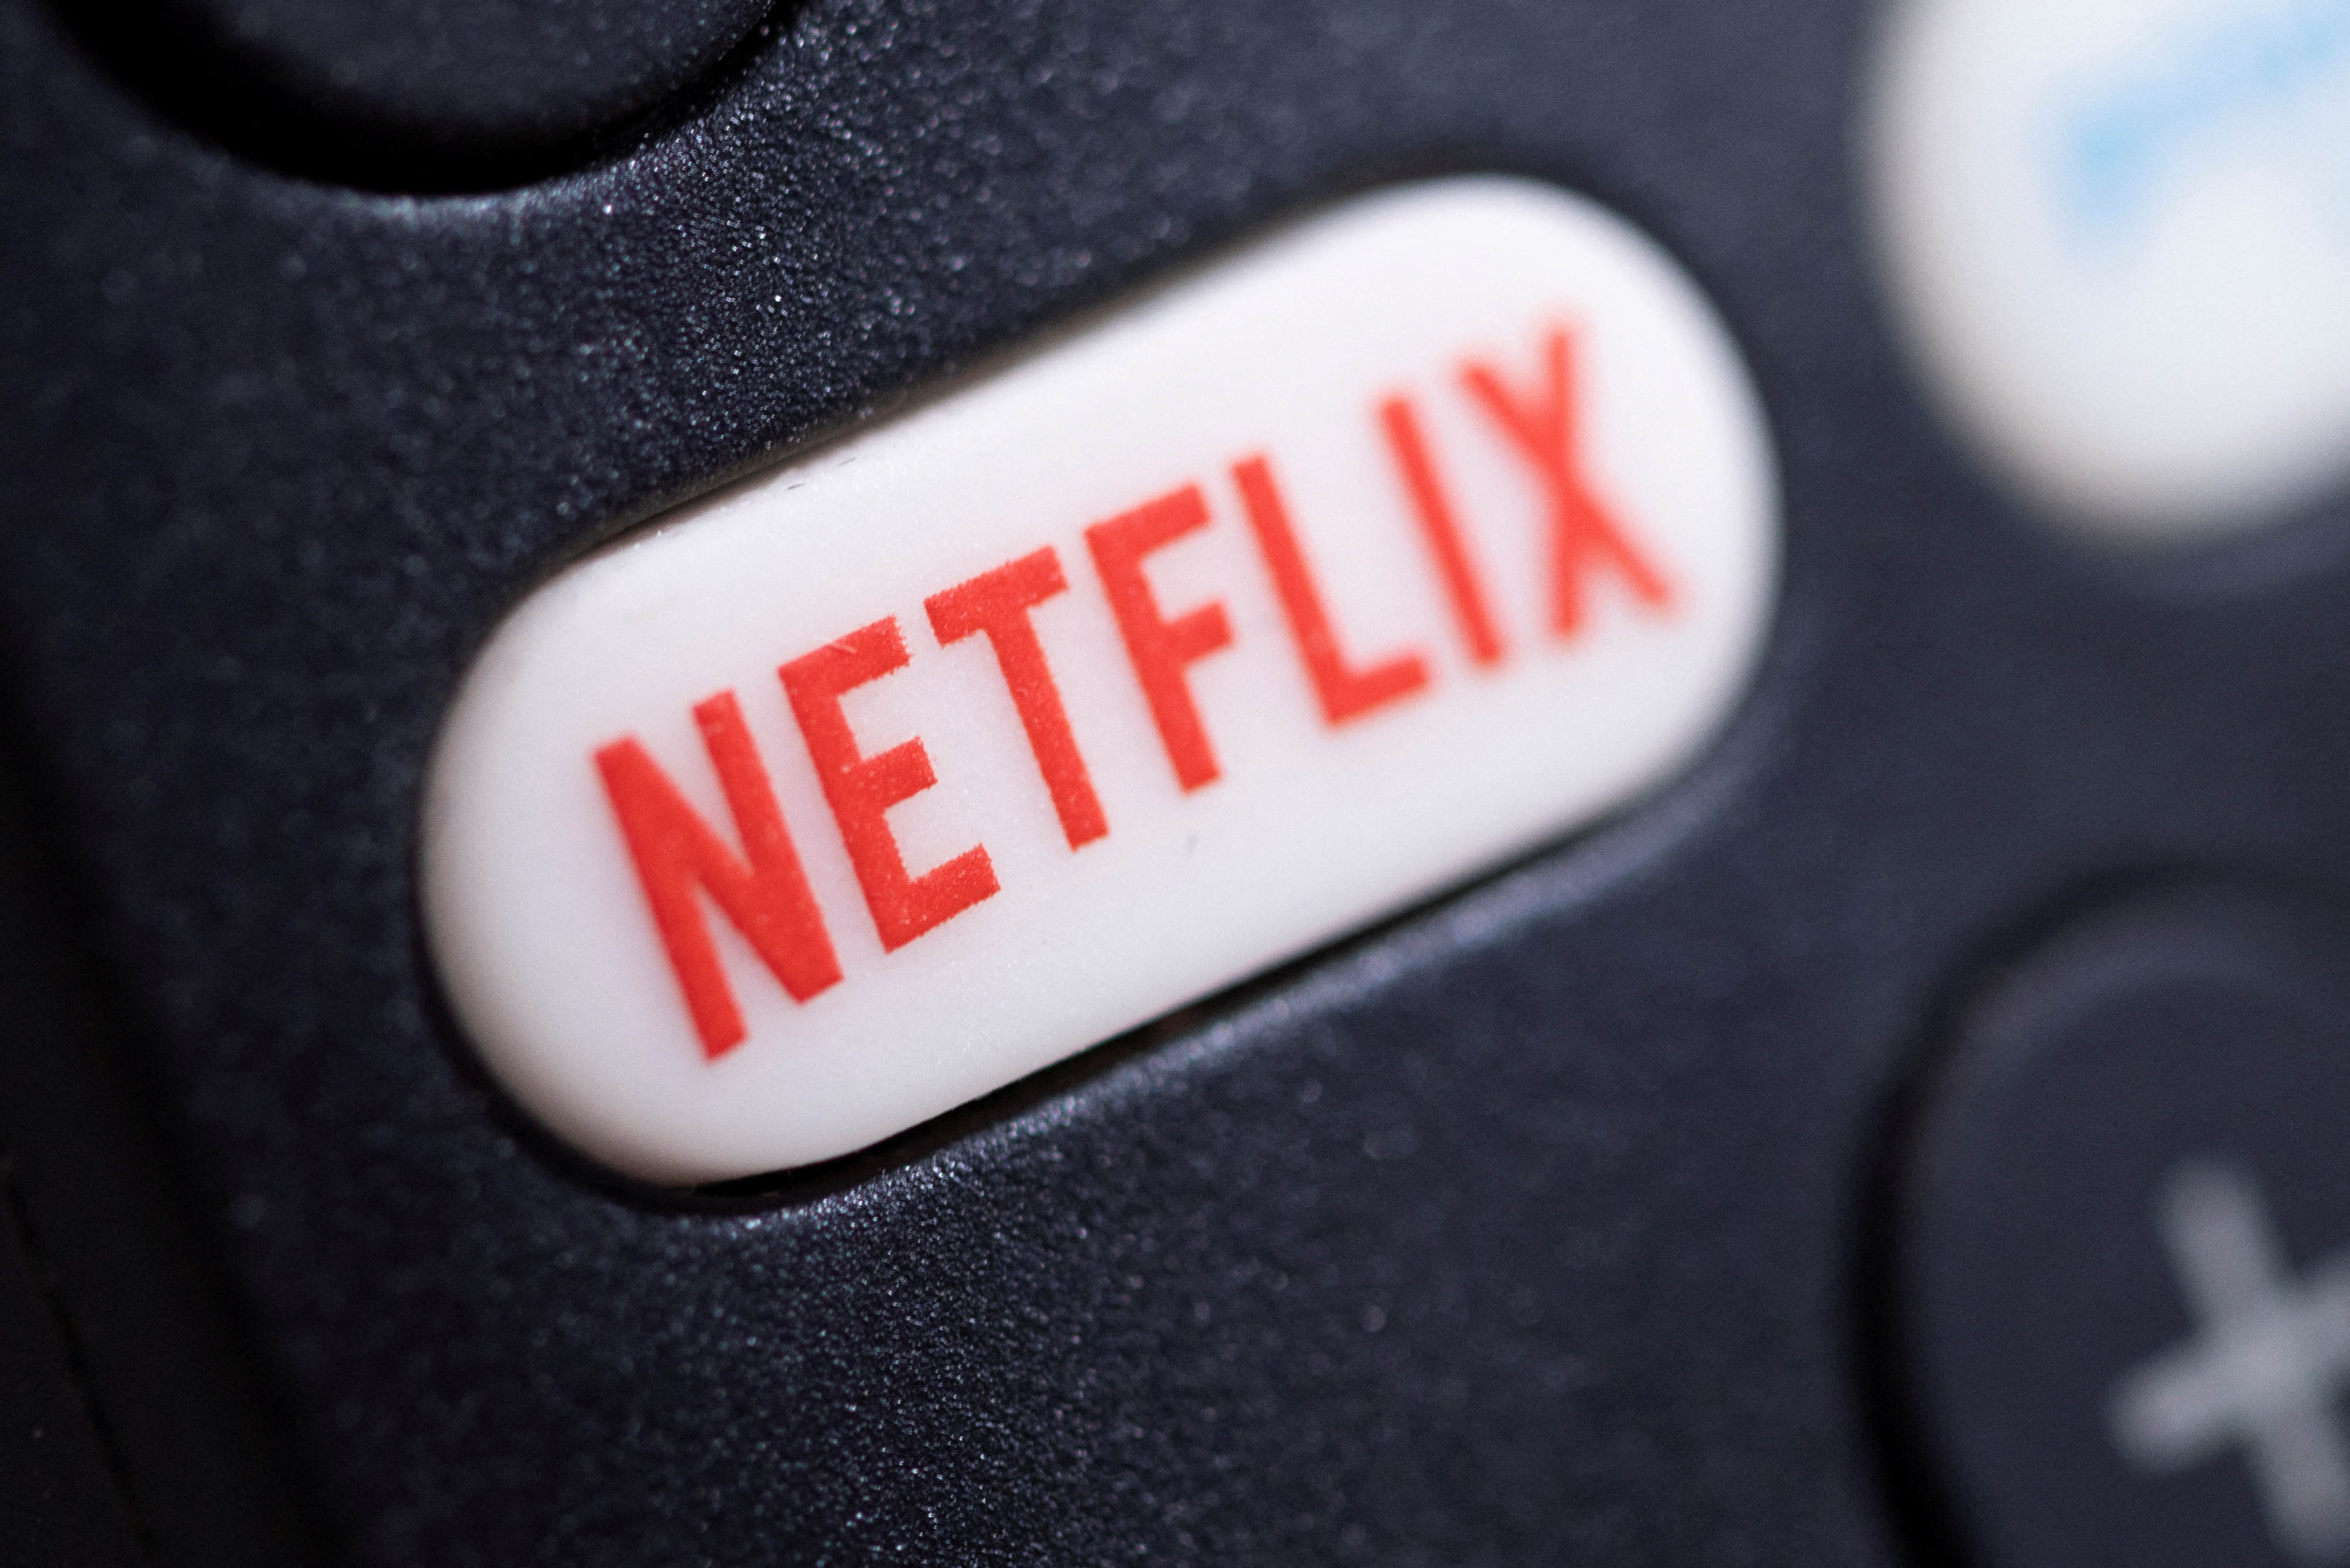  Por sus series y películas, Netflix se ha convertido en el rey del streaming. (REUTERS/Mike Blake)